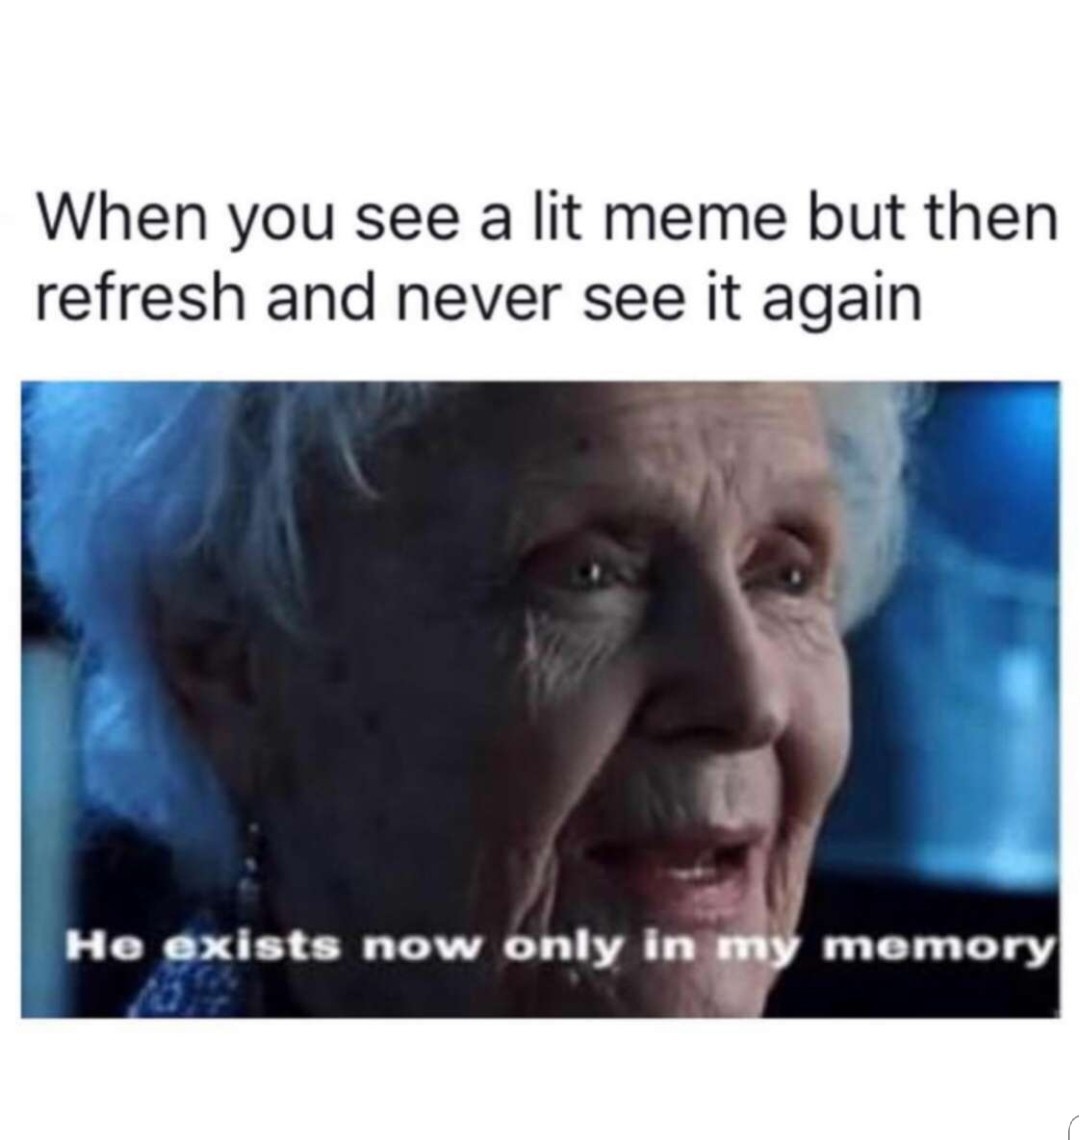 Rip - meme